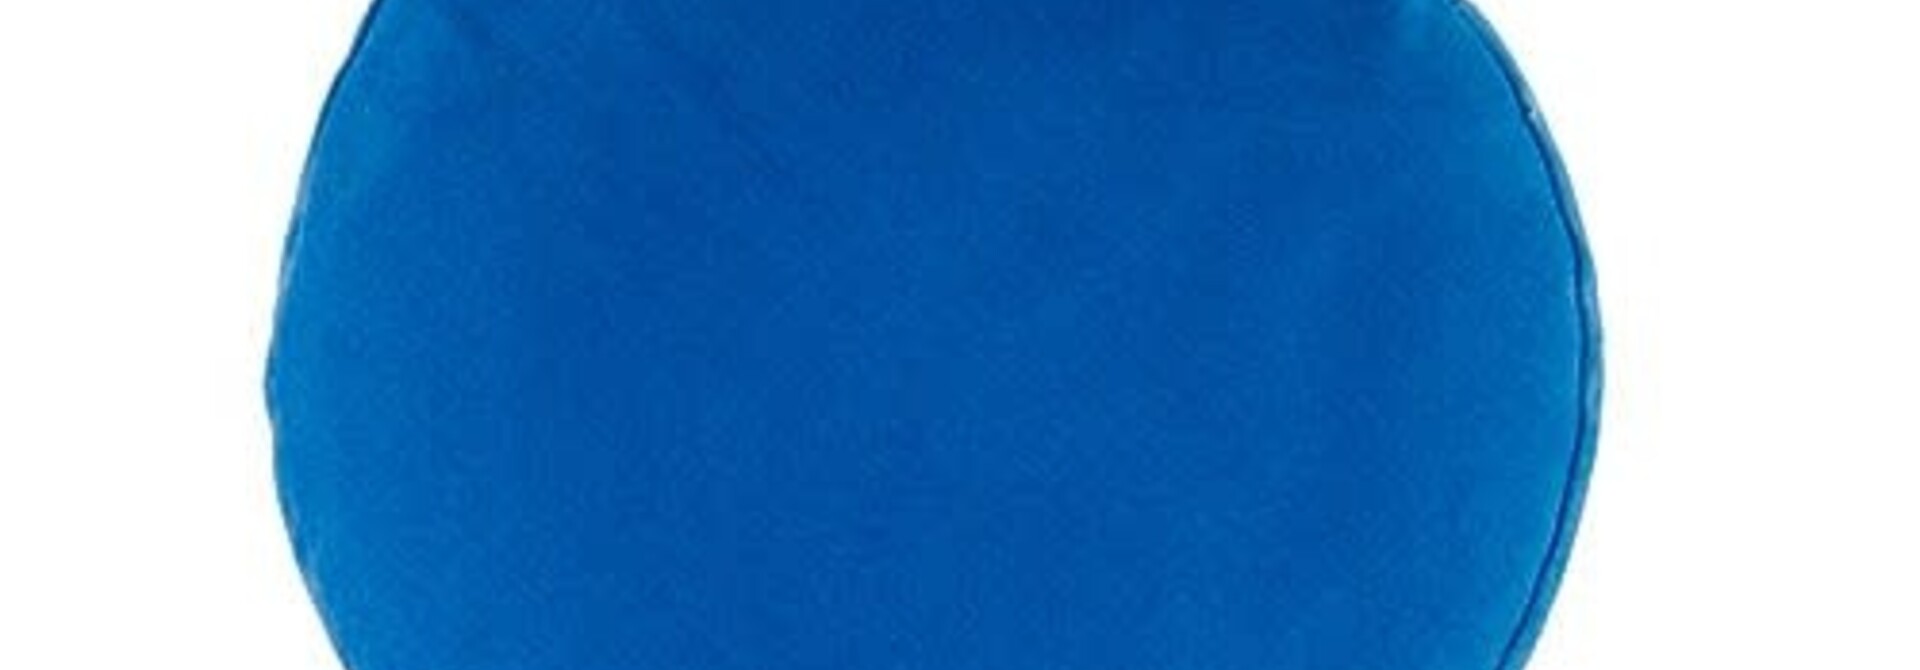 Yogisha Meditatiekussen Deluxe 13cm hoog - Lichtblauw